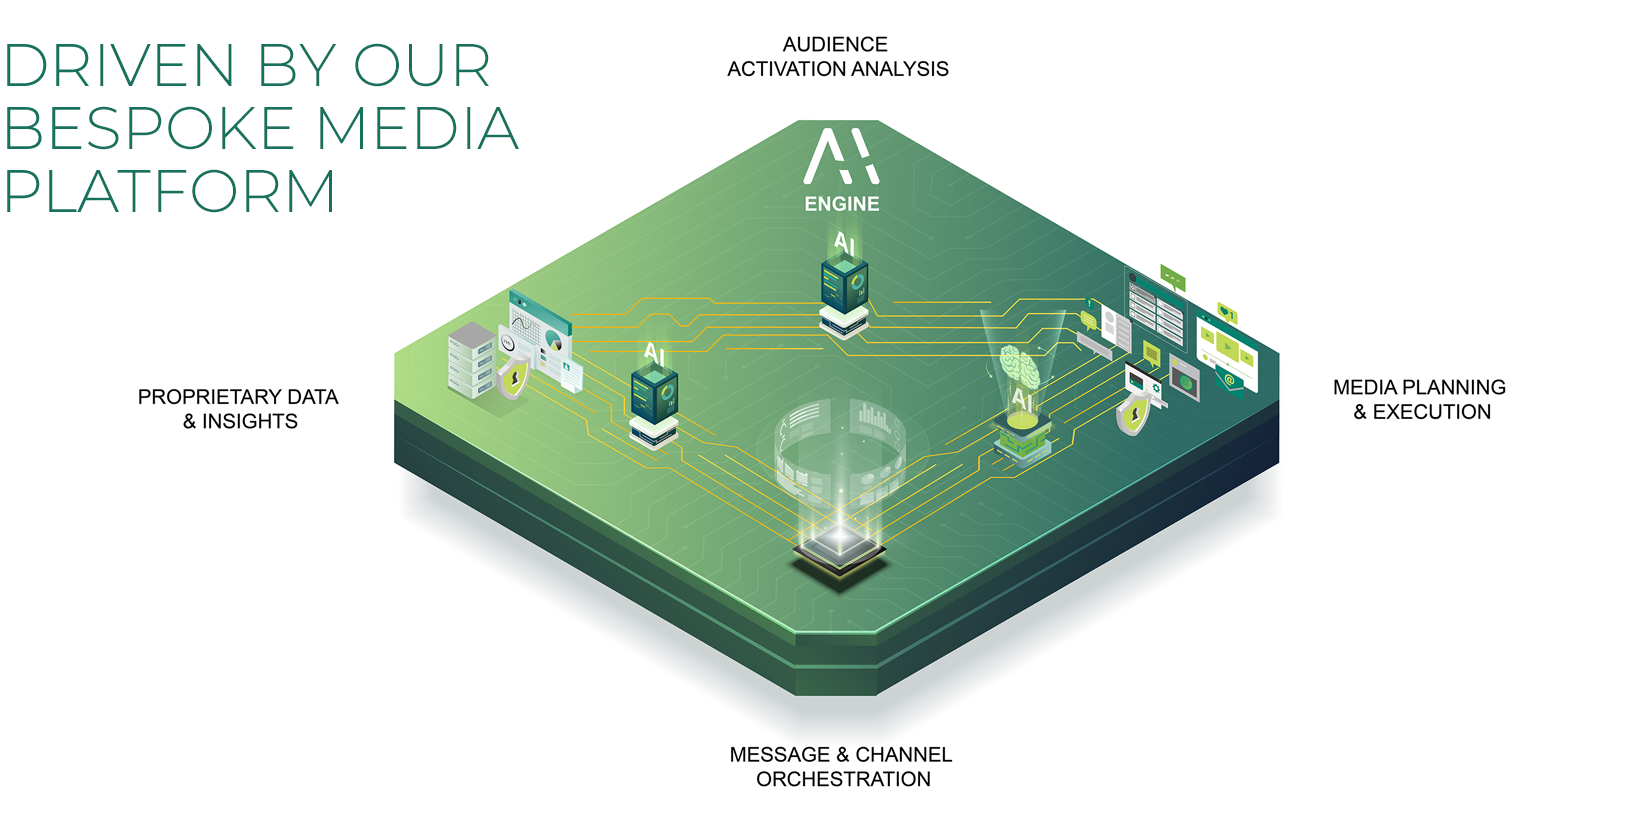 Media Platform